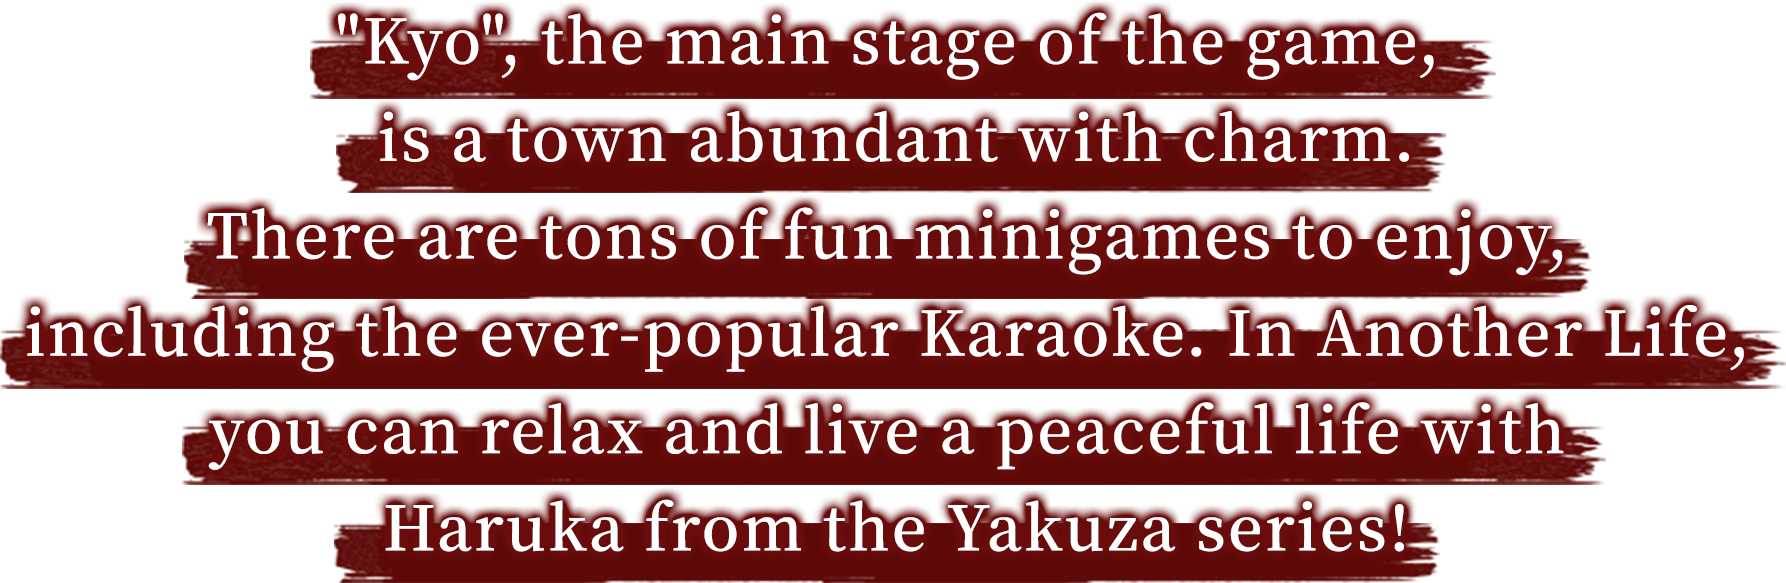 主な舞台である”京”を中心とした街での楽しみ方は“極”で更に進化。カラオケにも新たな楽曲が加わるなど、“極”では遊びがさらにボリュームアップ！